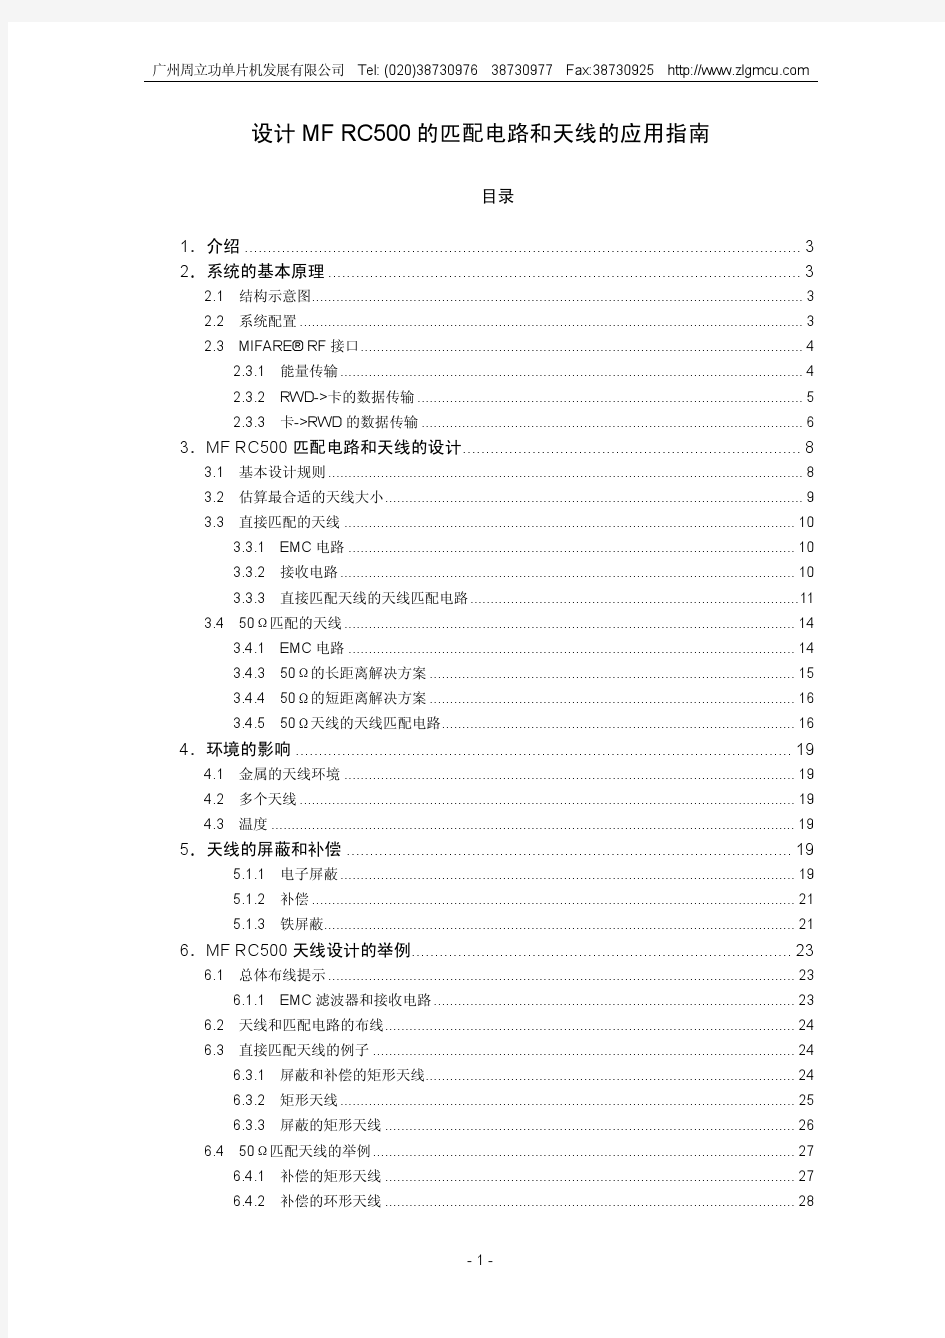 PHILIP_出的MFRC500的匹配电路和天线设计指南中文版